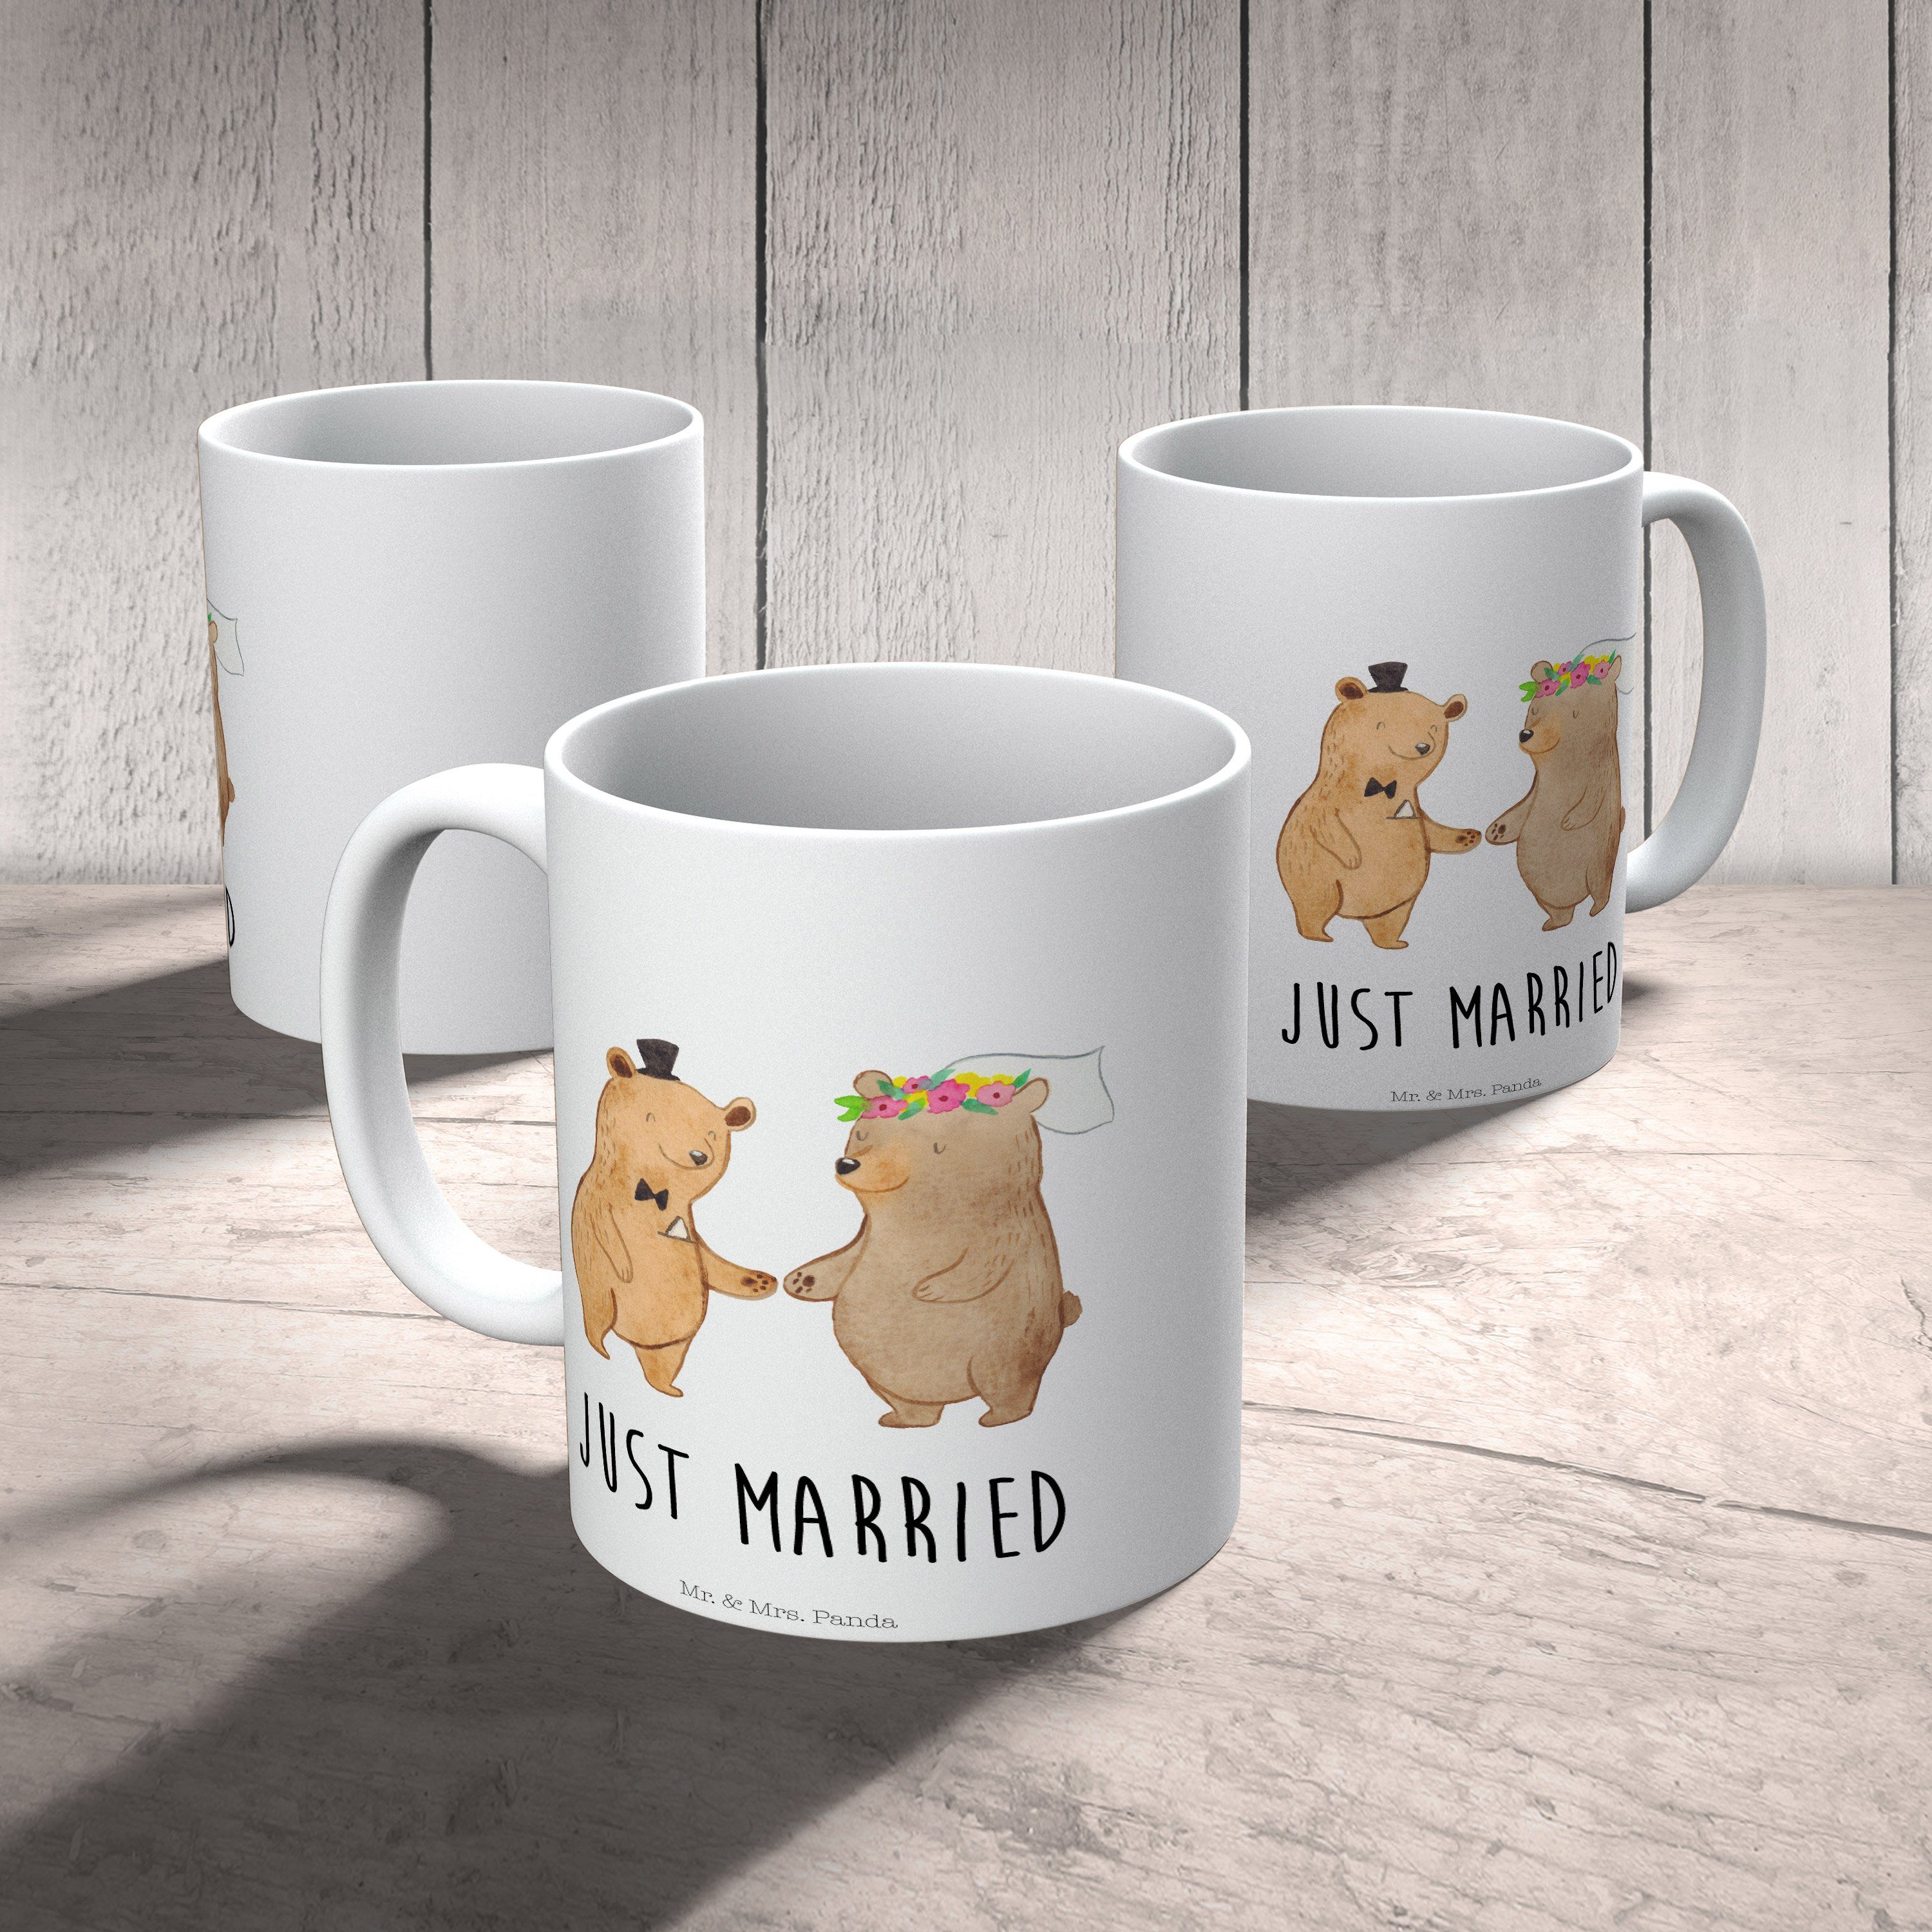 Mr. & Mrs. Panda Tasse Tasse - Teebecher, Sprüche, Weiß Bären - Geschenk, Heirat Keramik Ho, Trauung